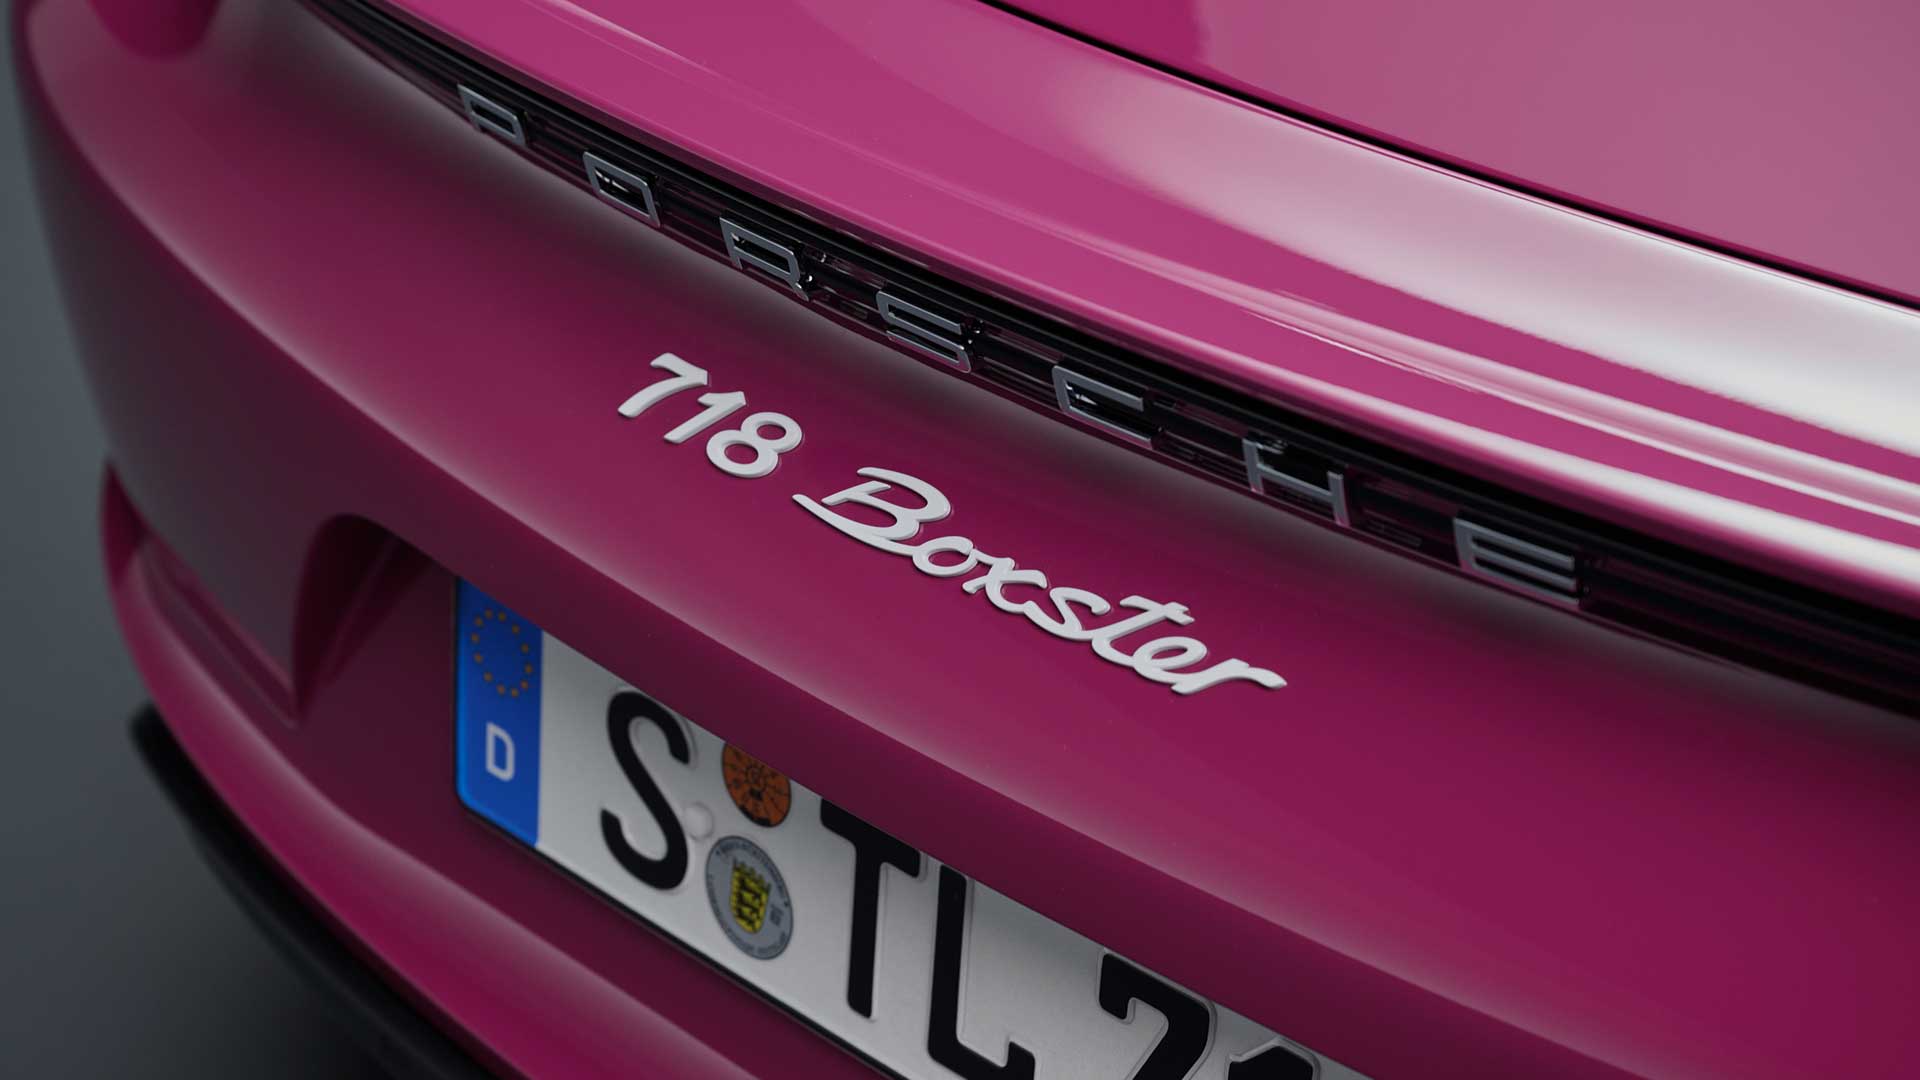 Dettaglio-Porsche-Boxter-718-Robb-Report-Italia